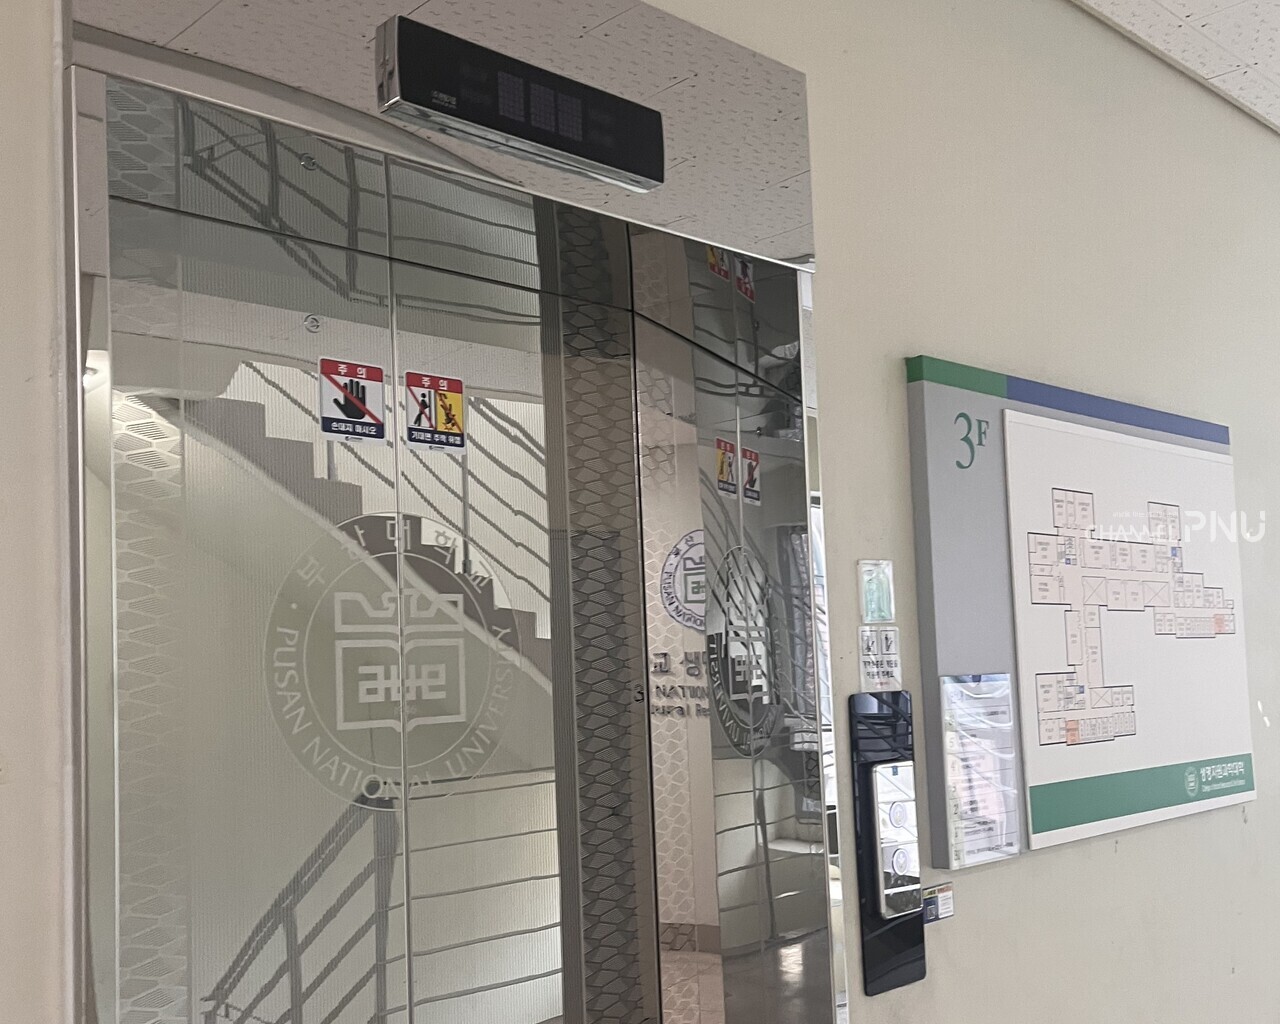 5일(오늘) 발생한 정전으로 인해 작동하지 않는 우리 대학 밀양캠퍼스 생명자원과학대학 건물 엘리베이터